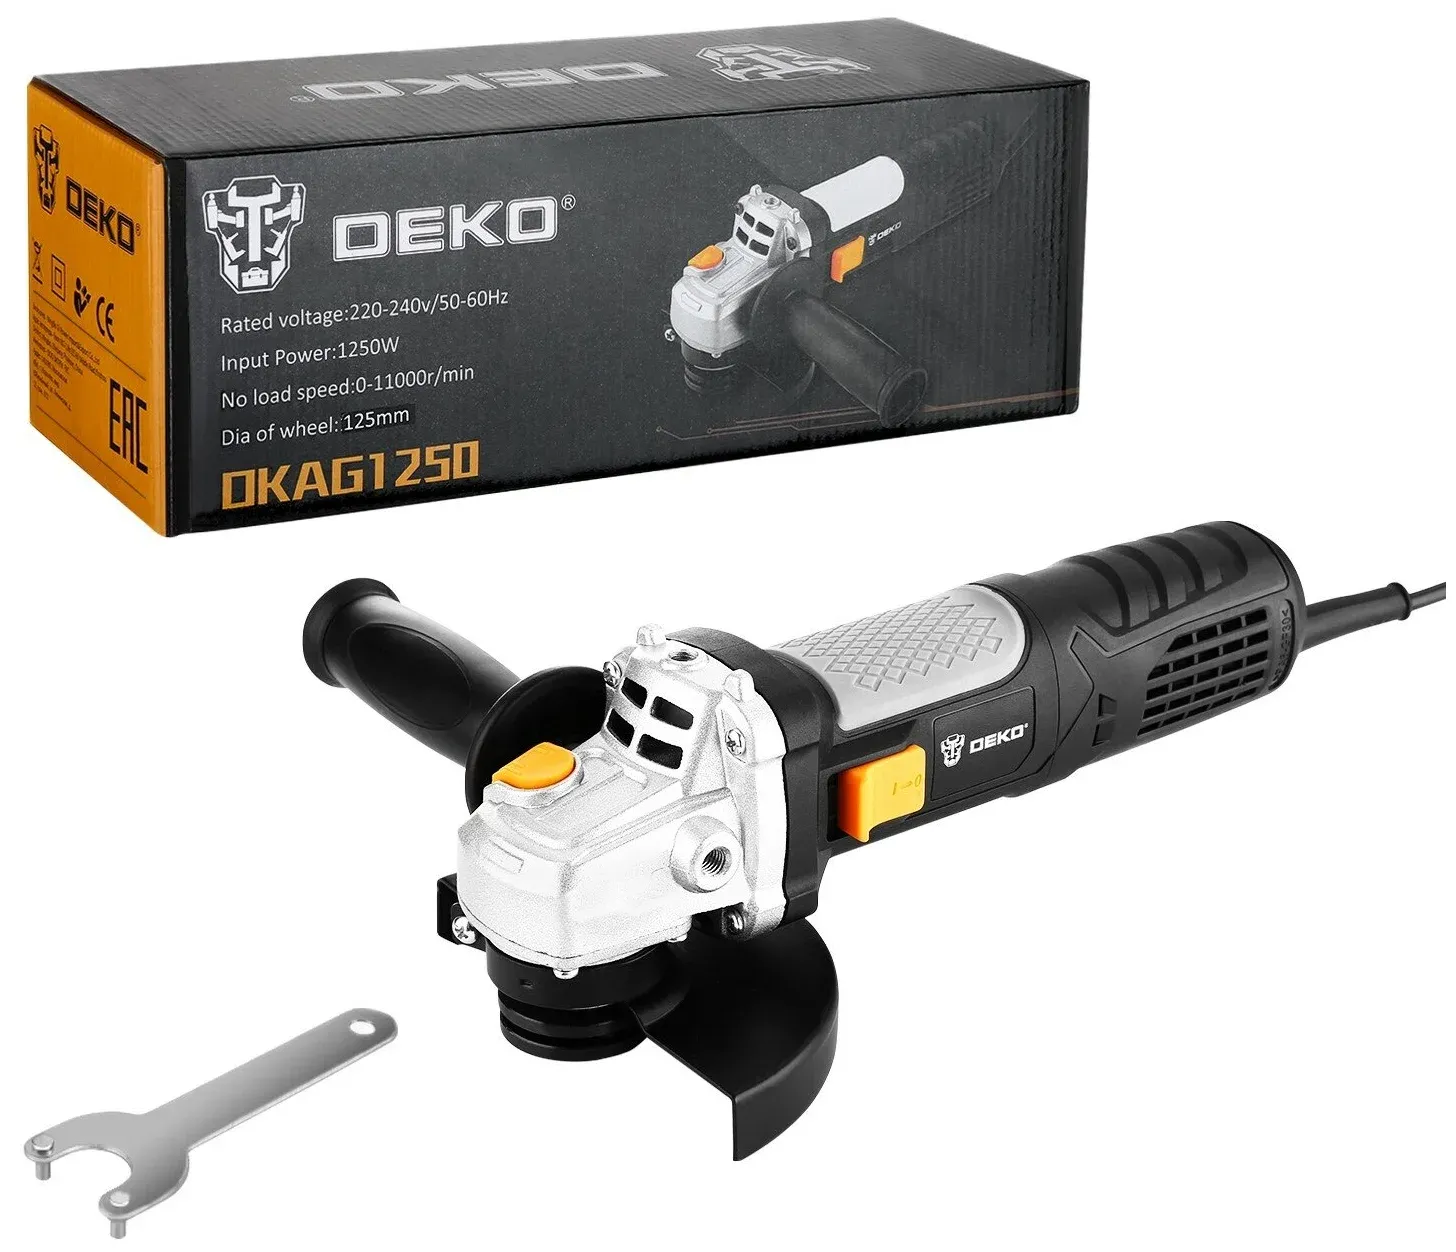 Углошлифовальная машина DEKO DKAG1250, 125 мм, 1250 Вт 063-4174